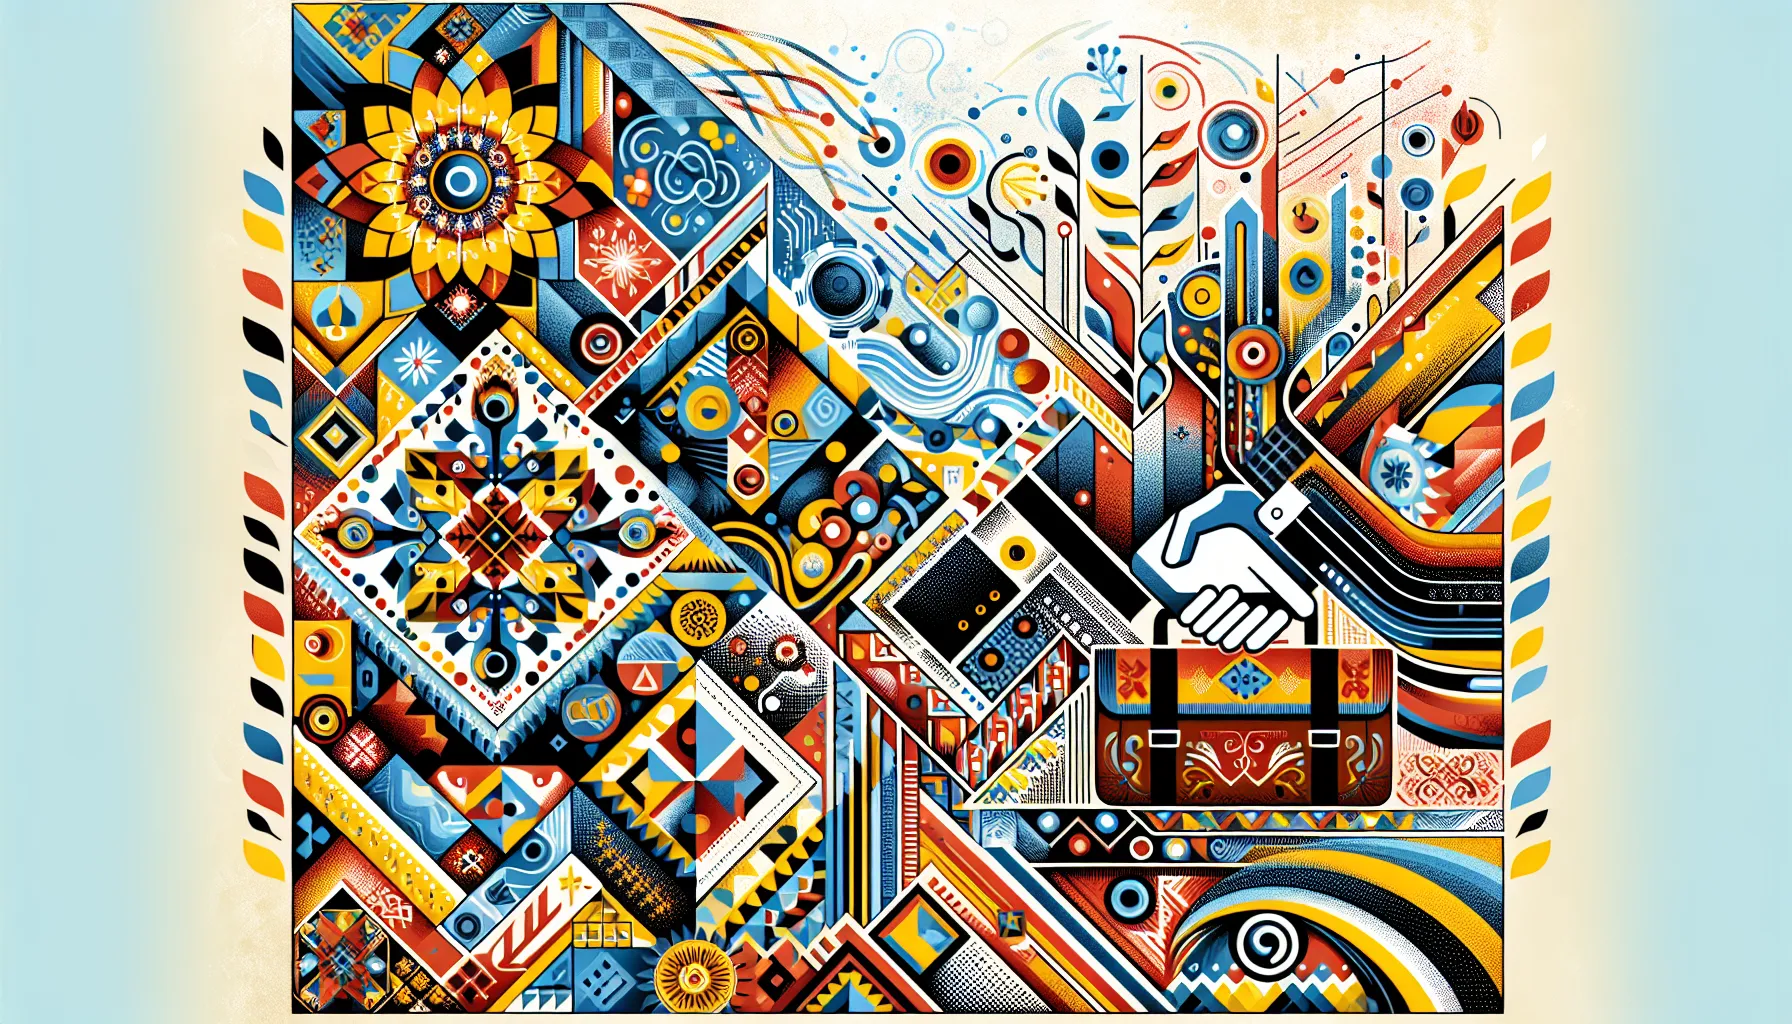 Абстрактна композиція, що символізує концепцію "пітч" у бізнесі, з елементами української культури та бізнес-ікон